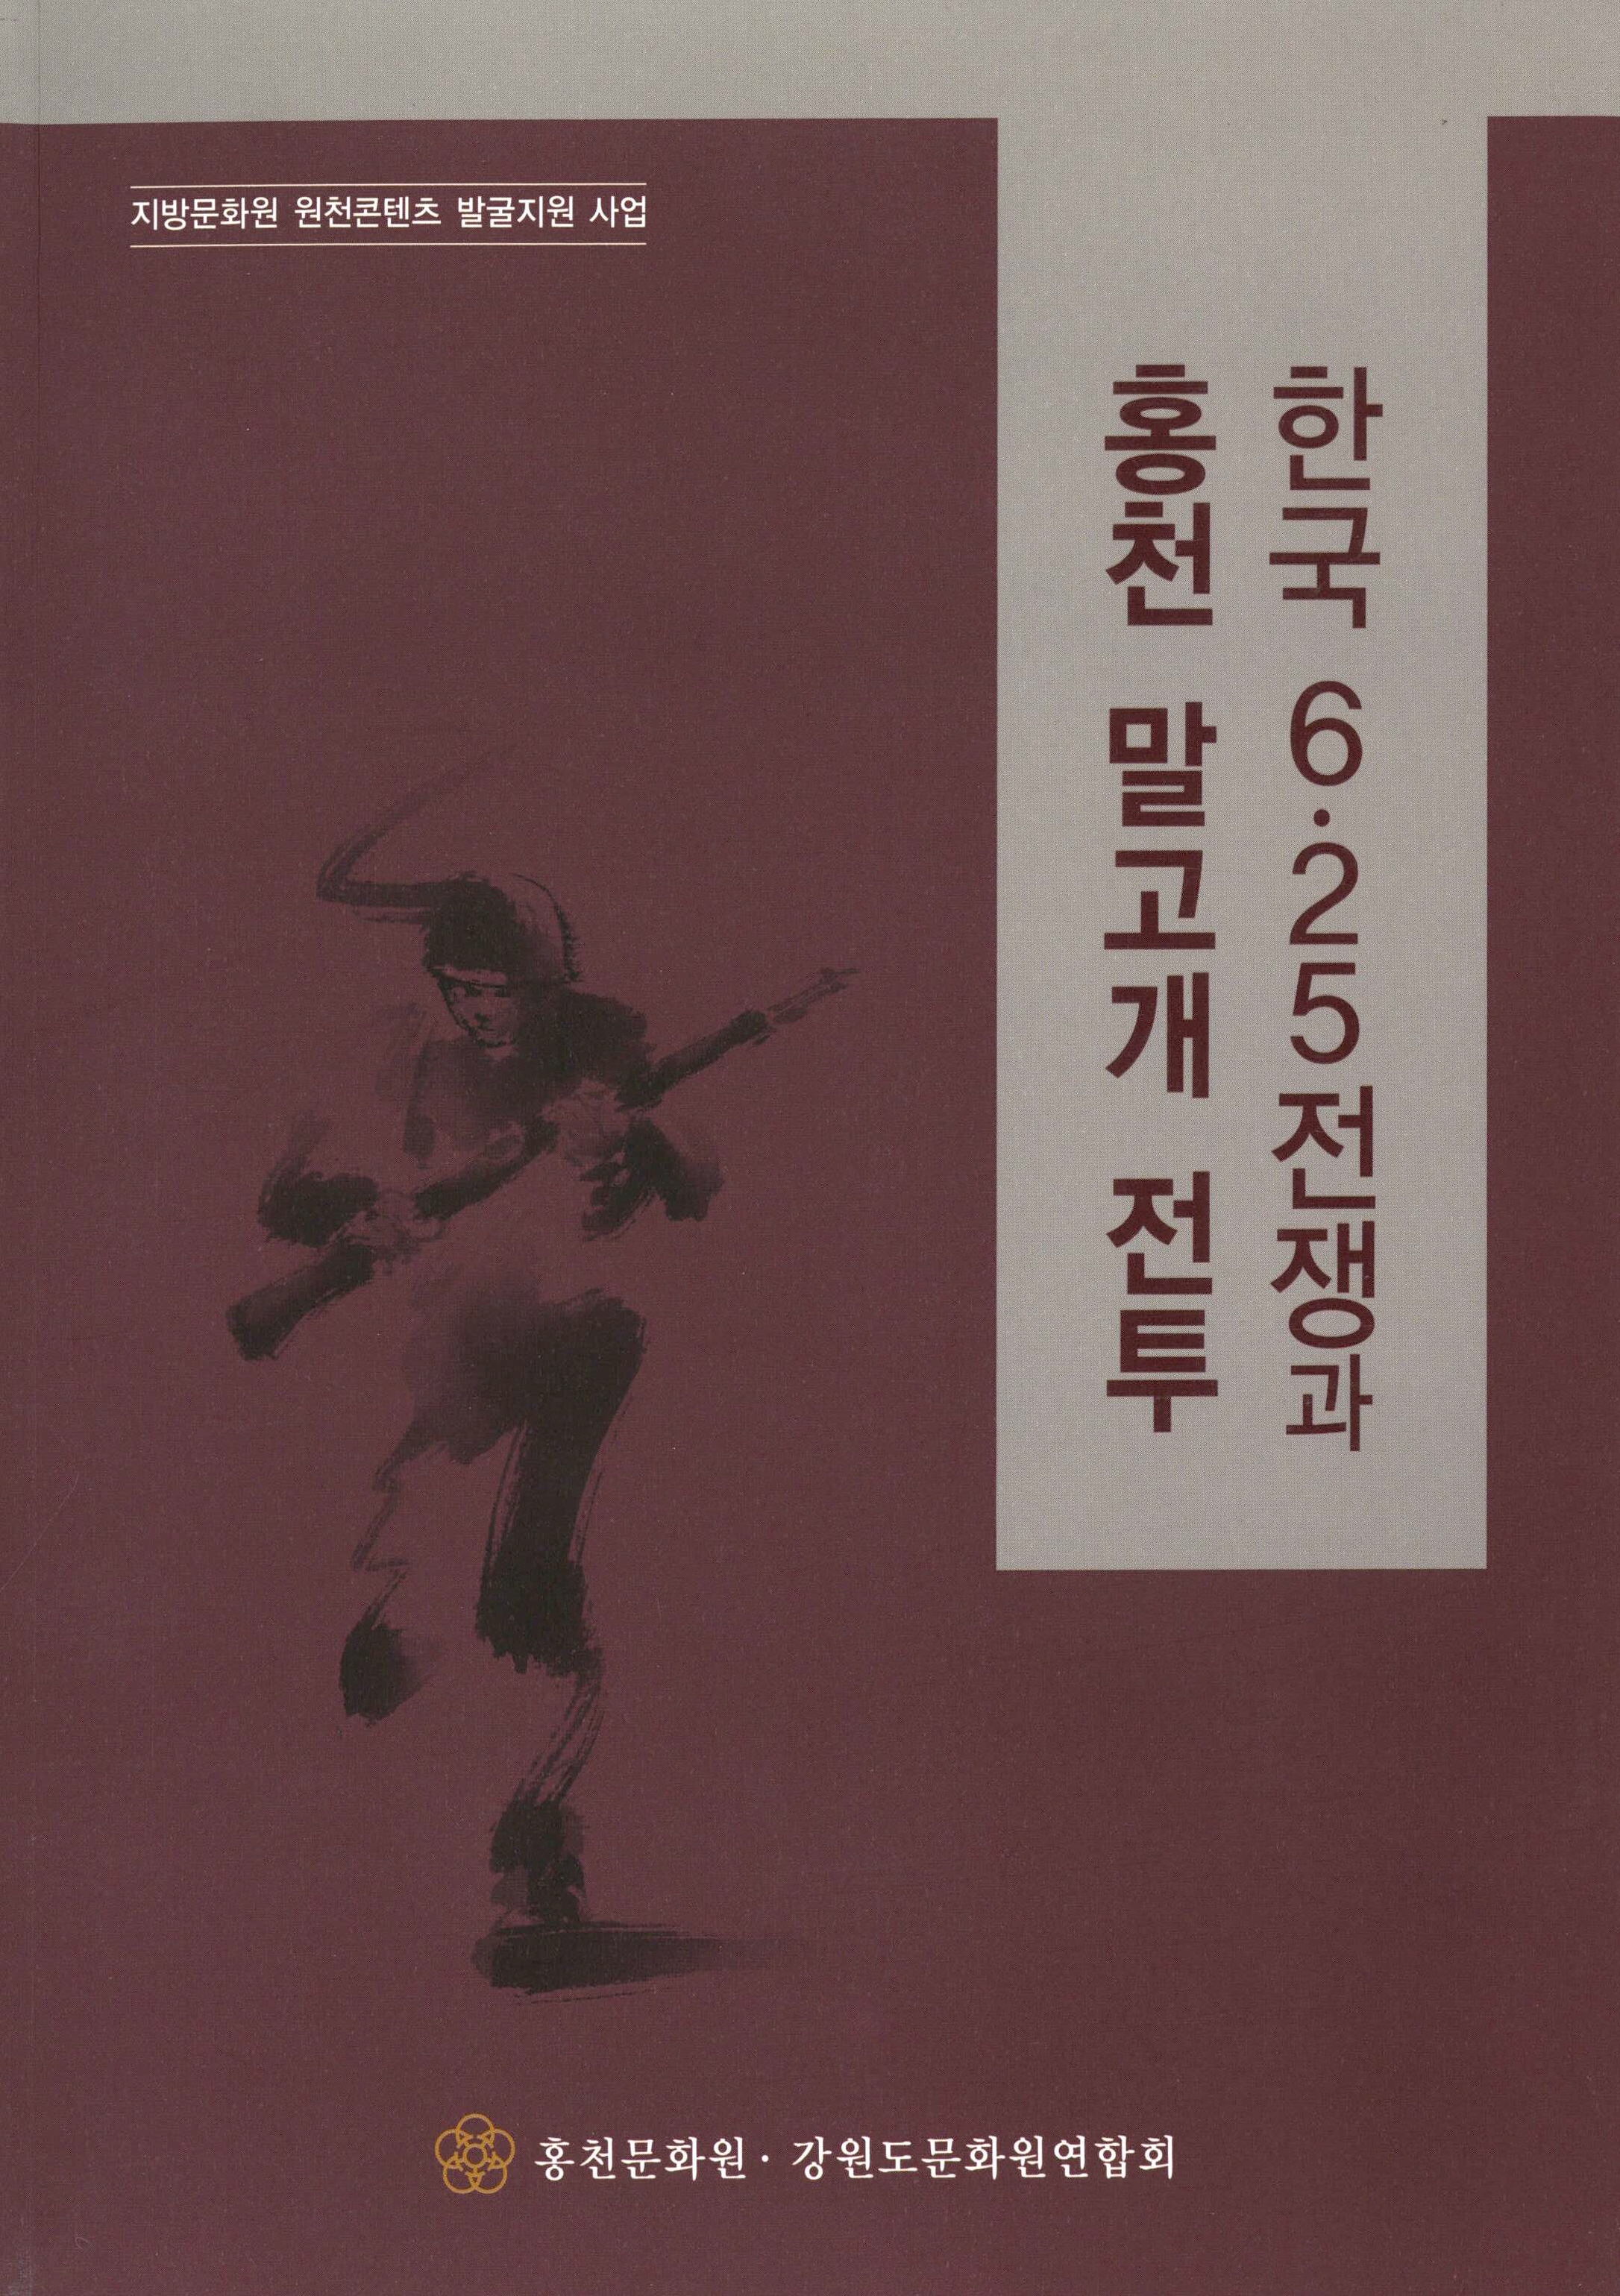 지방문화원 원천콘텐츠 발굴지원 사업한국 6.25전쟁과 홍천 말고개 전투